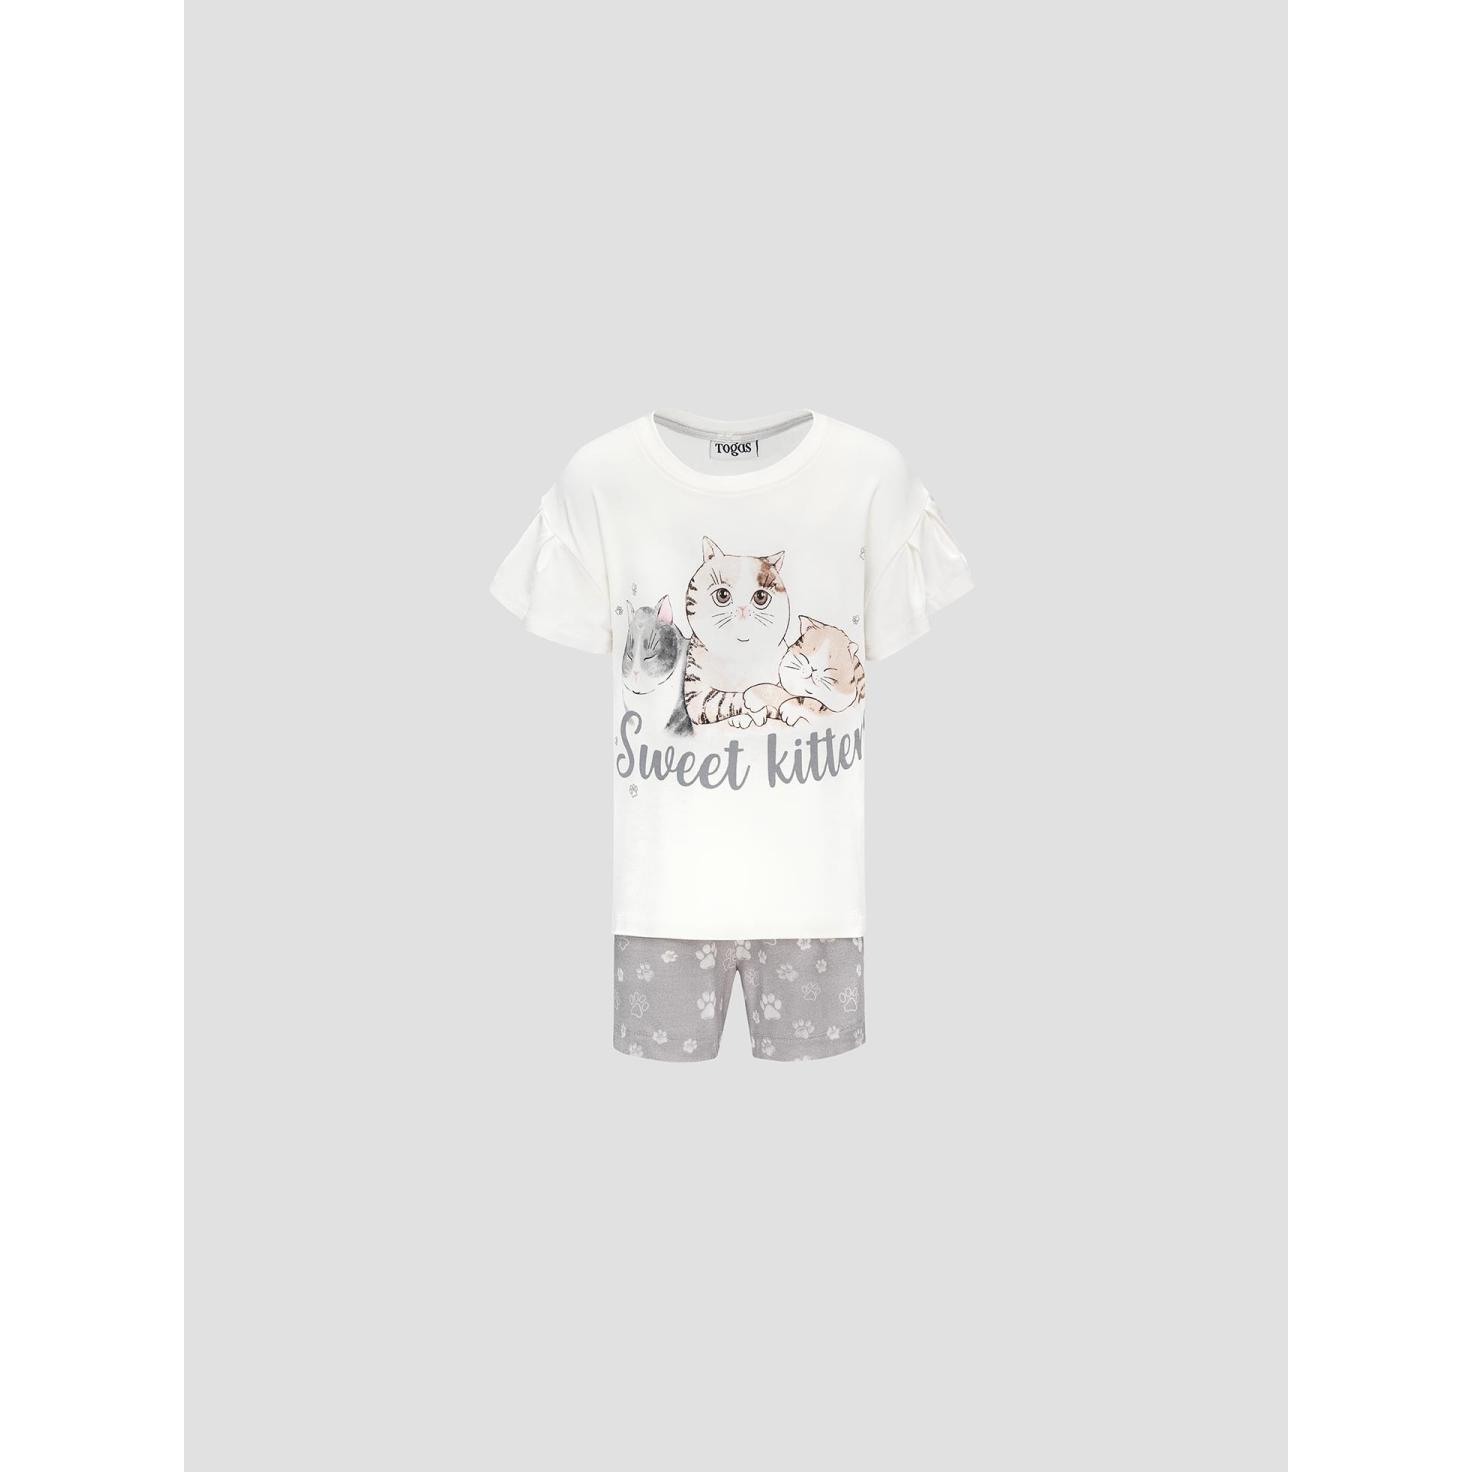 Пижама для девочек Kids by togas Китти бело-серая 128-134 см жен пижама арт 16 0866 белый р 48